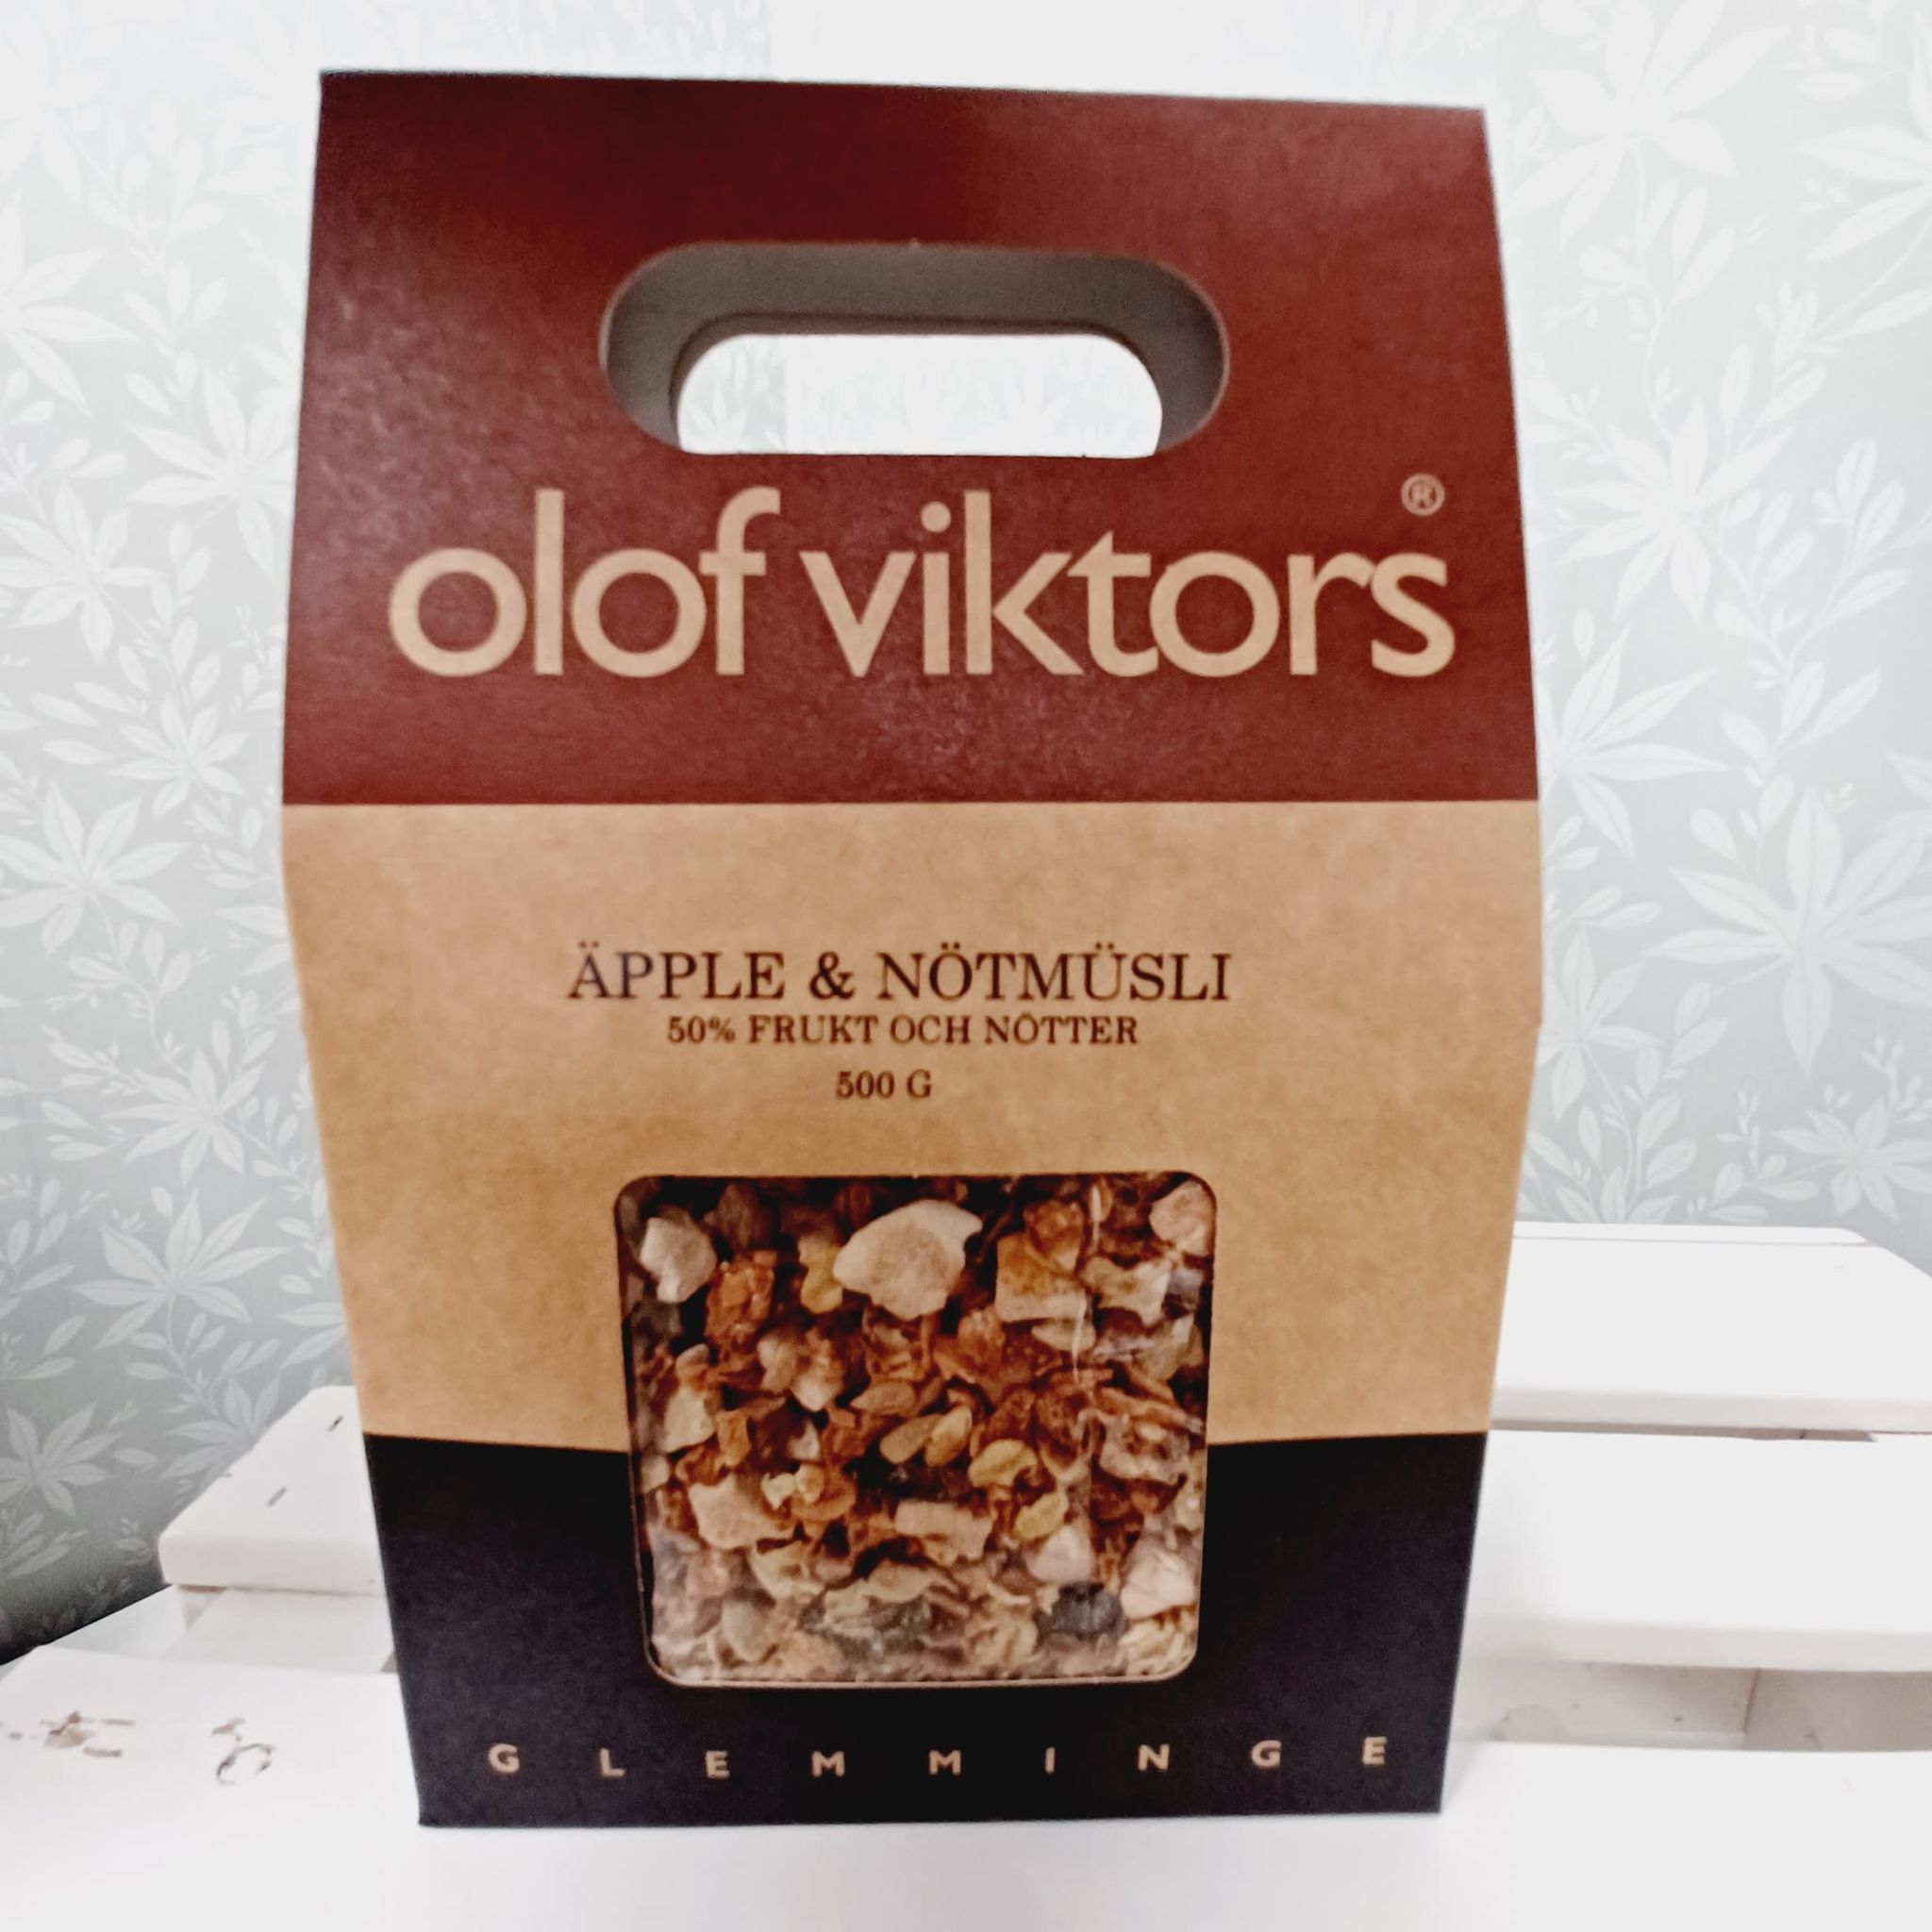 Äpple & nötmüsli 500g, Olof Viktors